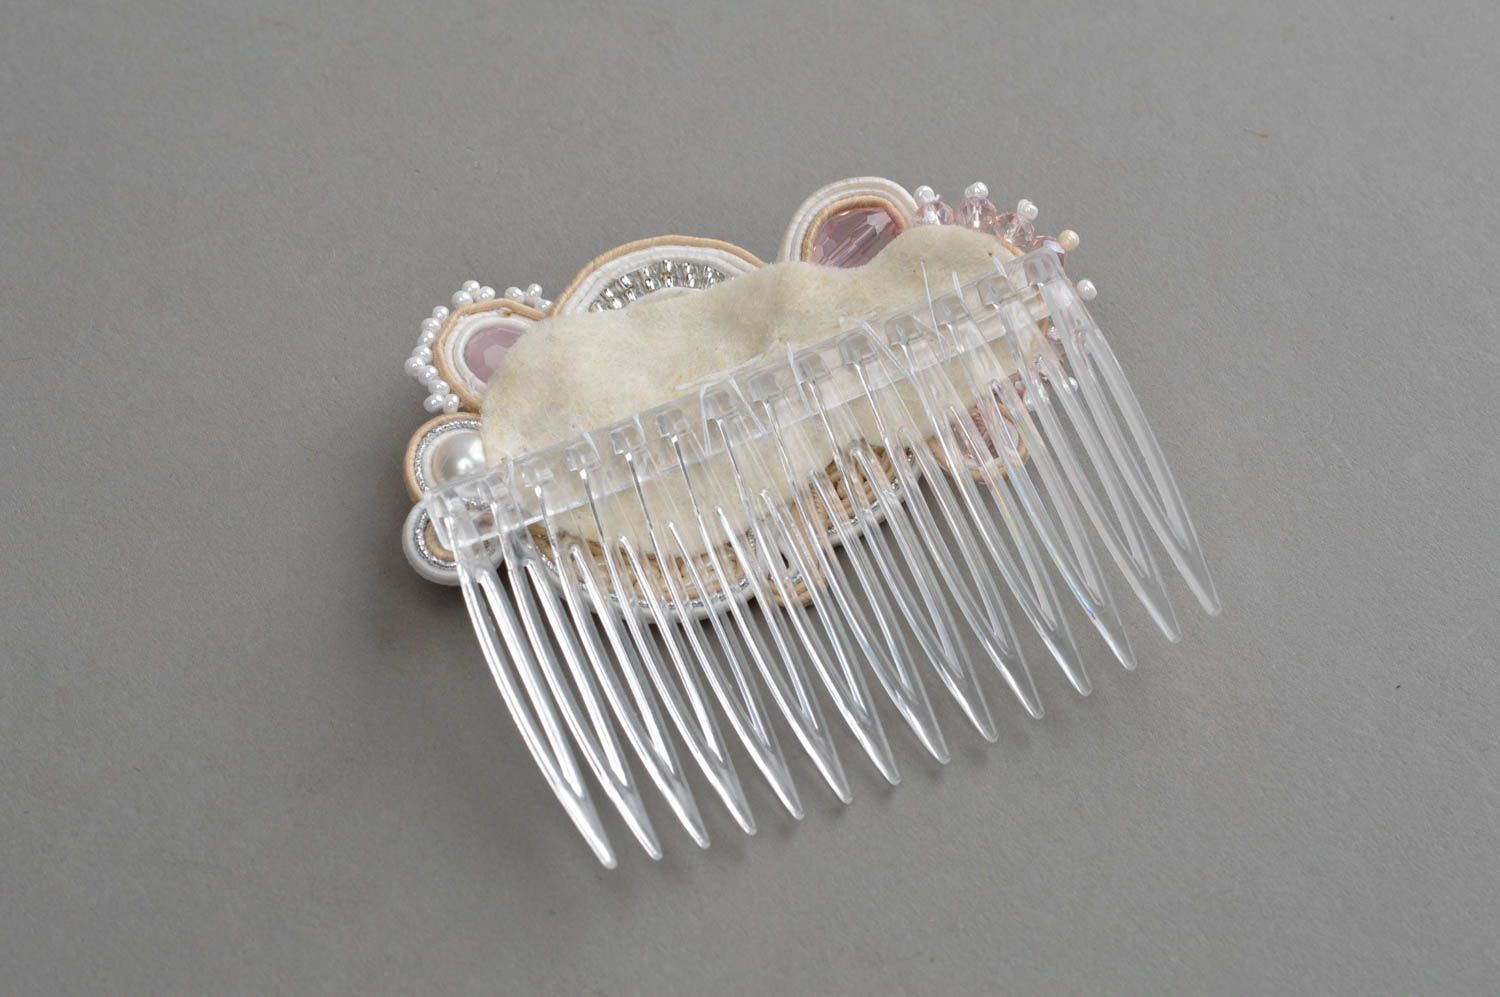 Schöner kleiner Haarkamm mit Glasperlen und Perlmutter in Soutache Technik foto 4